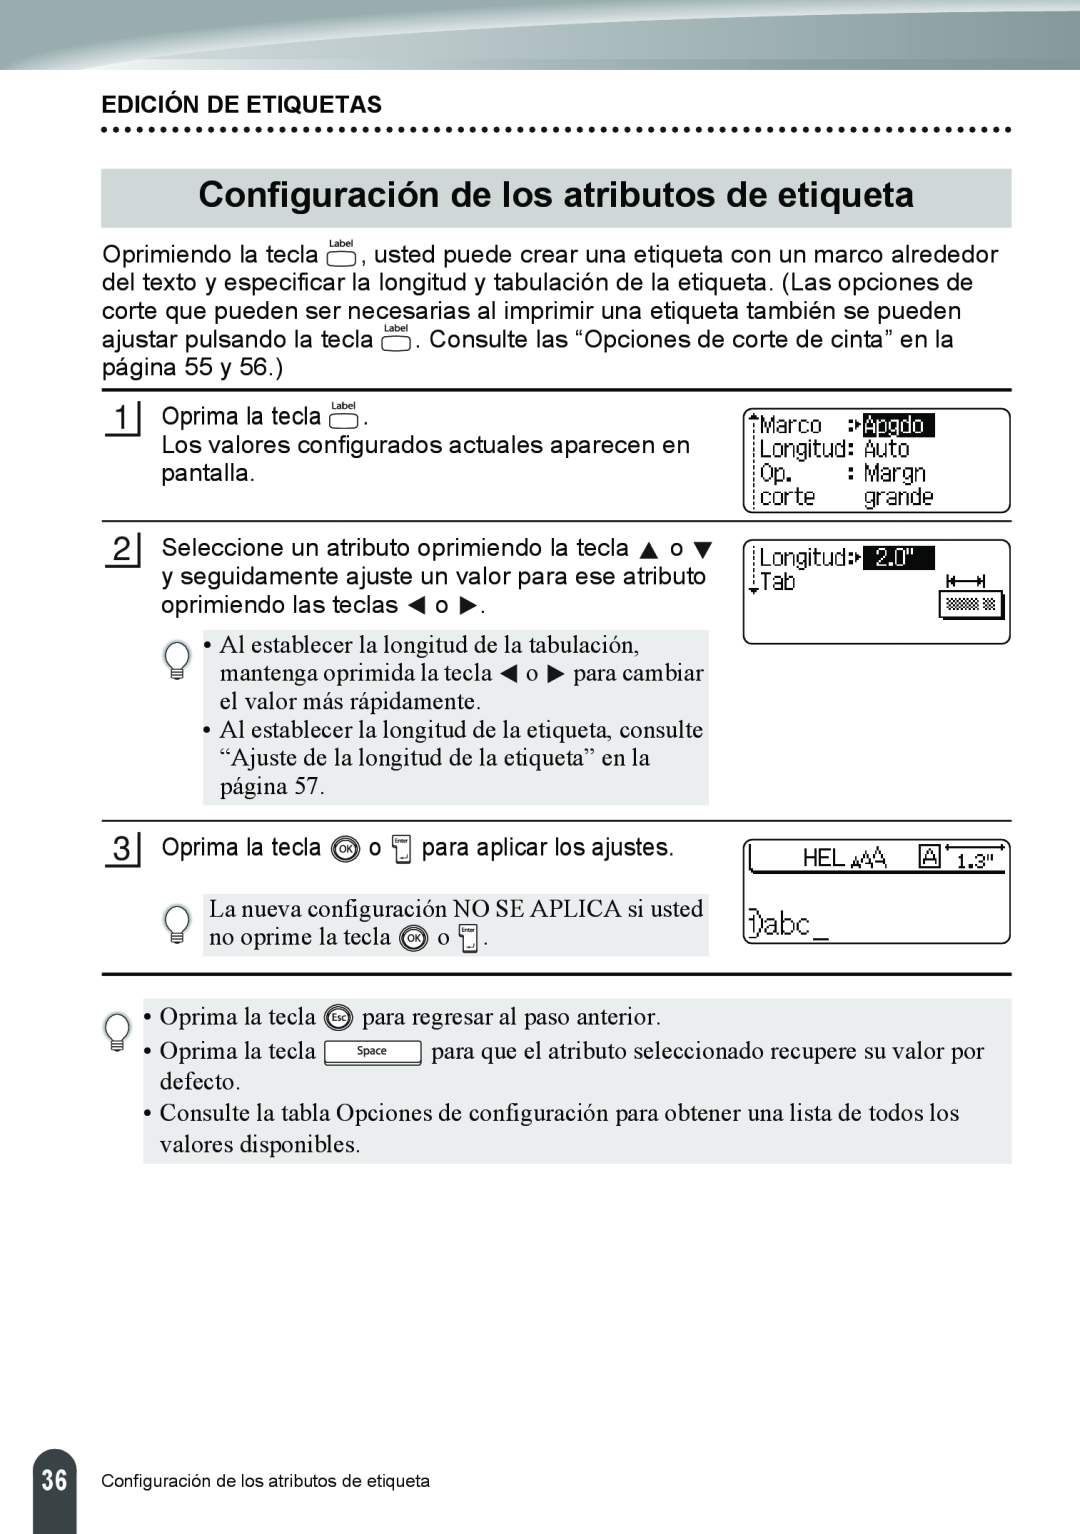 Brother PT-2110, PT-2100 manual Configuración de los atributos de etiqueta, Edición De Etiquetas 